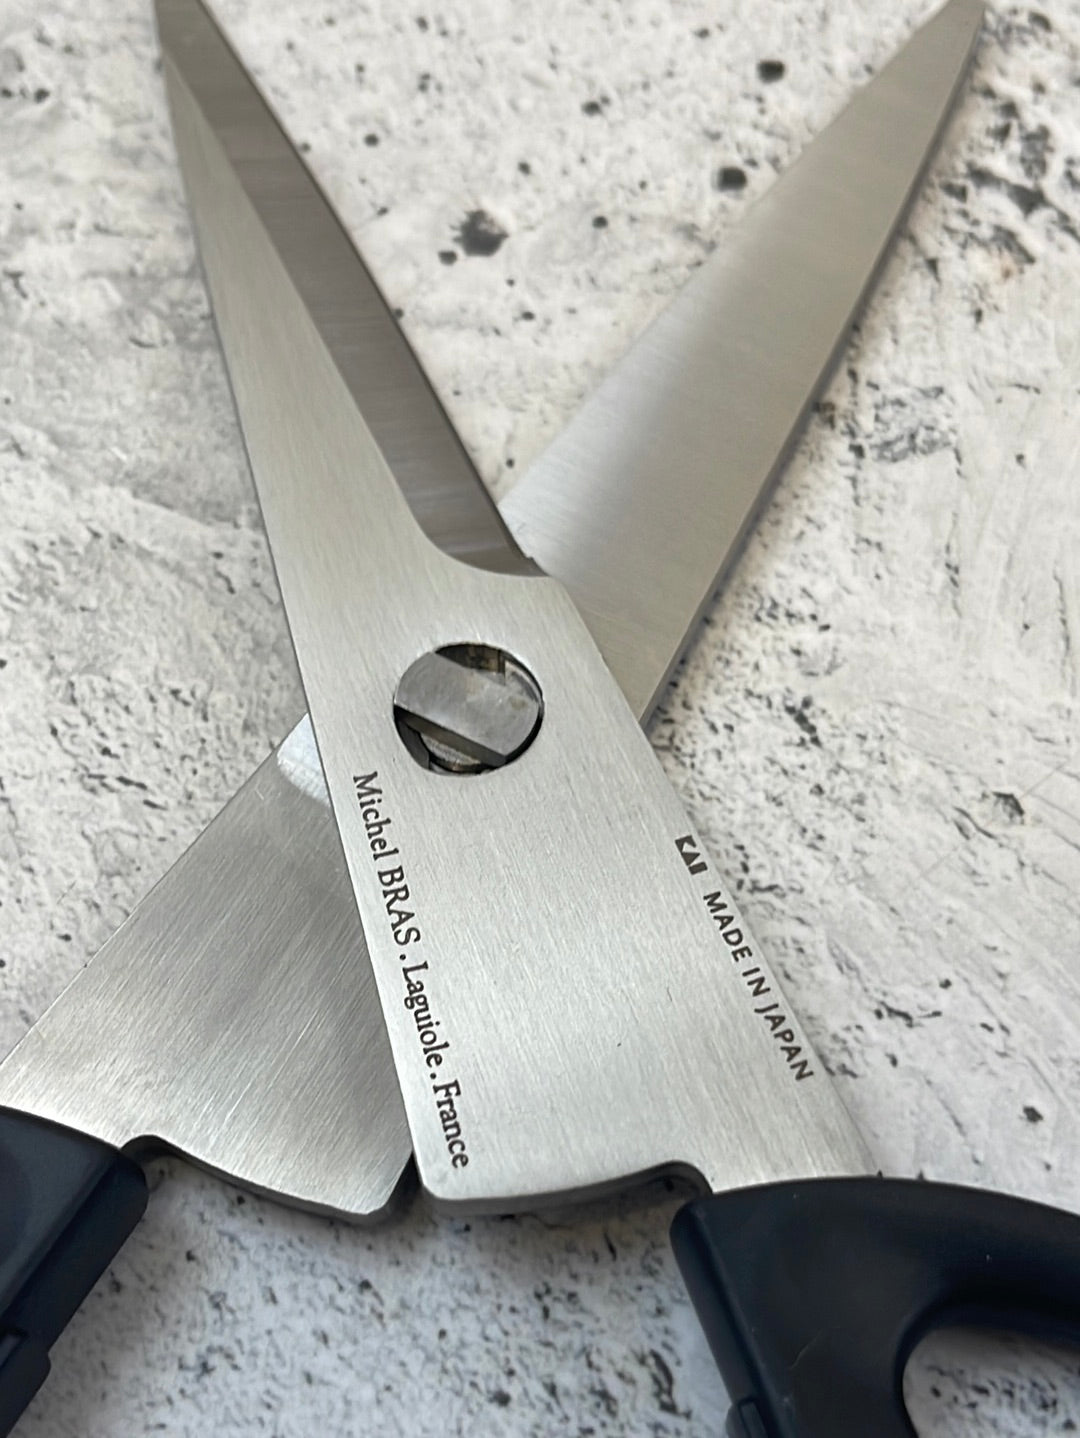 SHUN KAI Michel Bras Kitchen Scissors No 1 (Small) – Chef & a knife